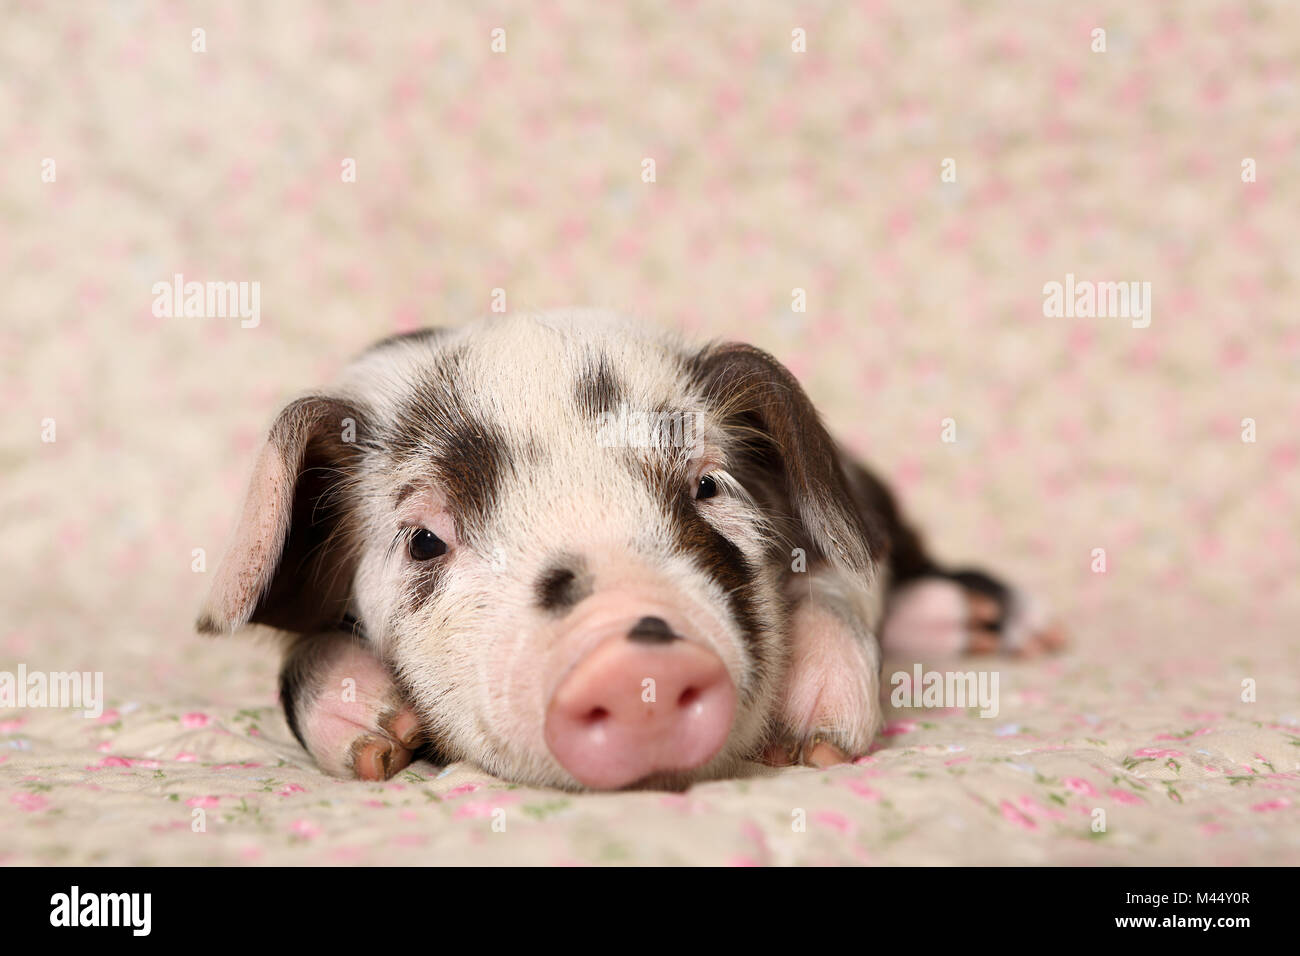 Porc domestique, Turopolje x ?. Porcinet (4 semaines) étendu sur une couverture avec impression de fleurs. Studio photo. Allemagne Banque D'Images